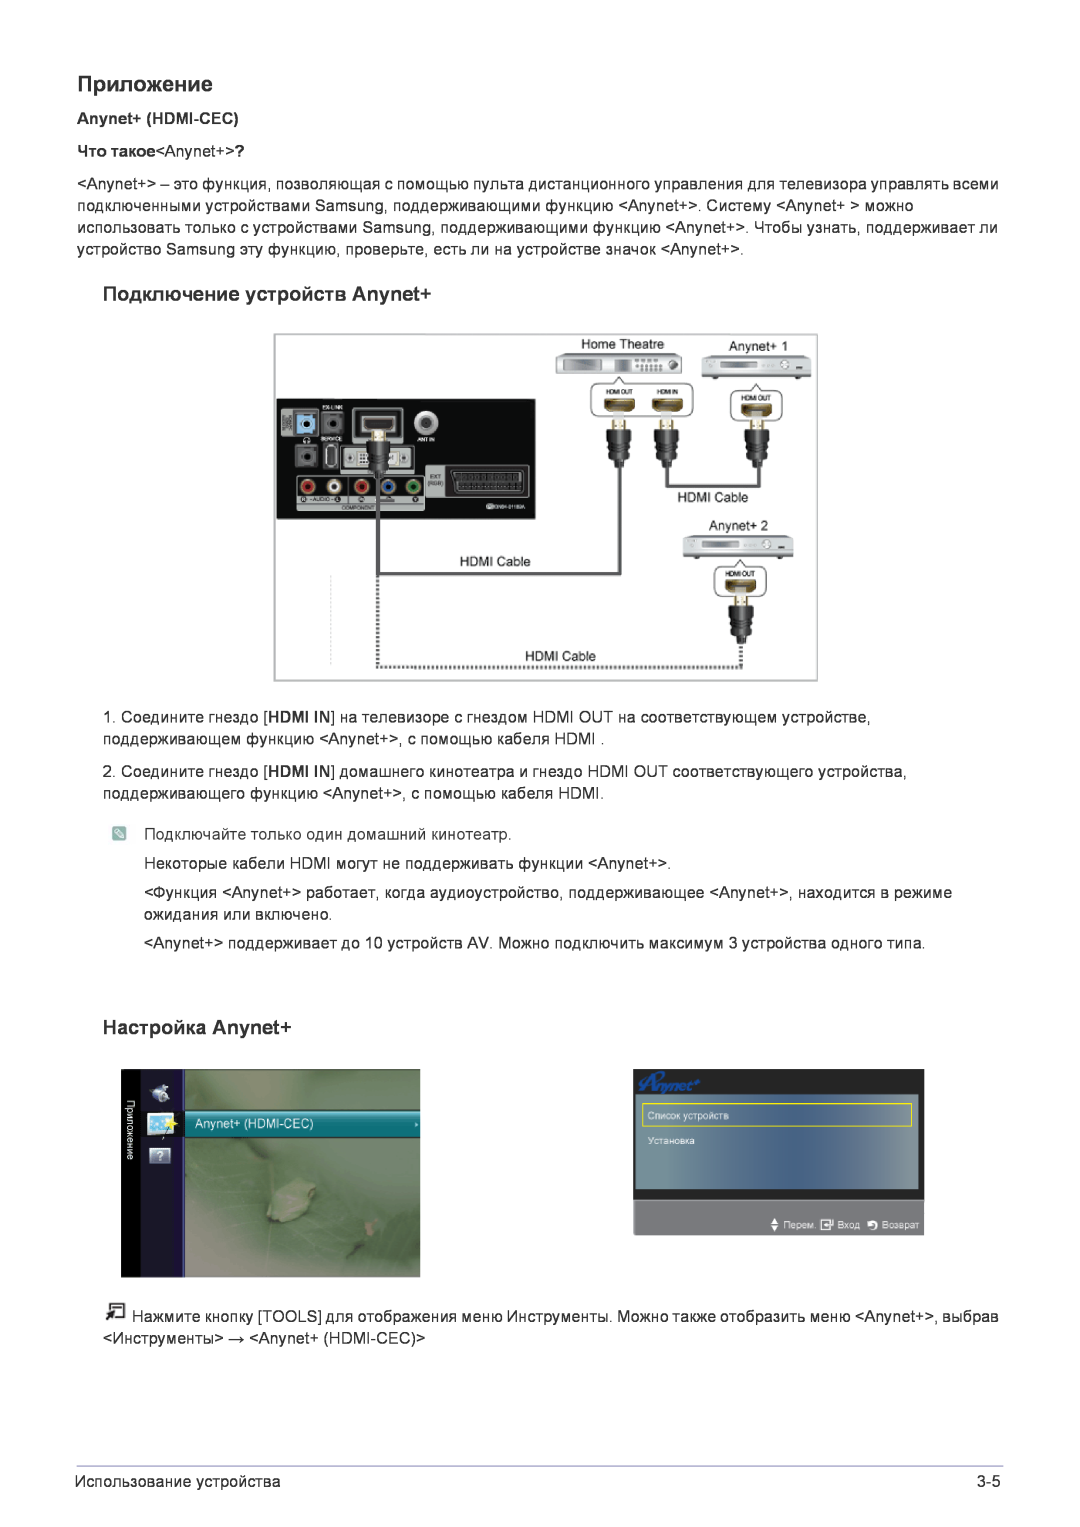 Samsung LS22FMDGF/EN manual Приложение, Подключение устройств Anynet+, Настройка Anynet+ 